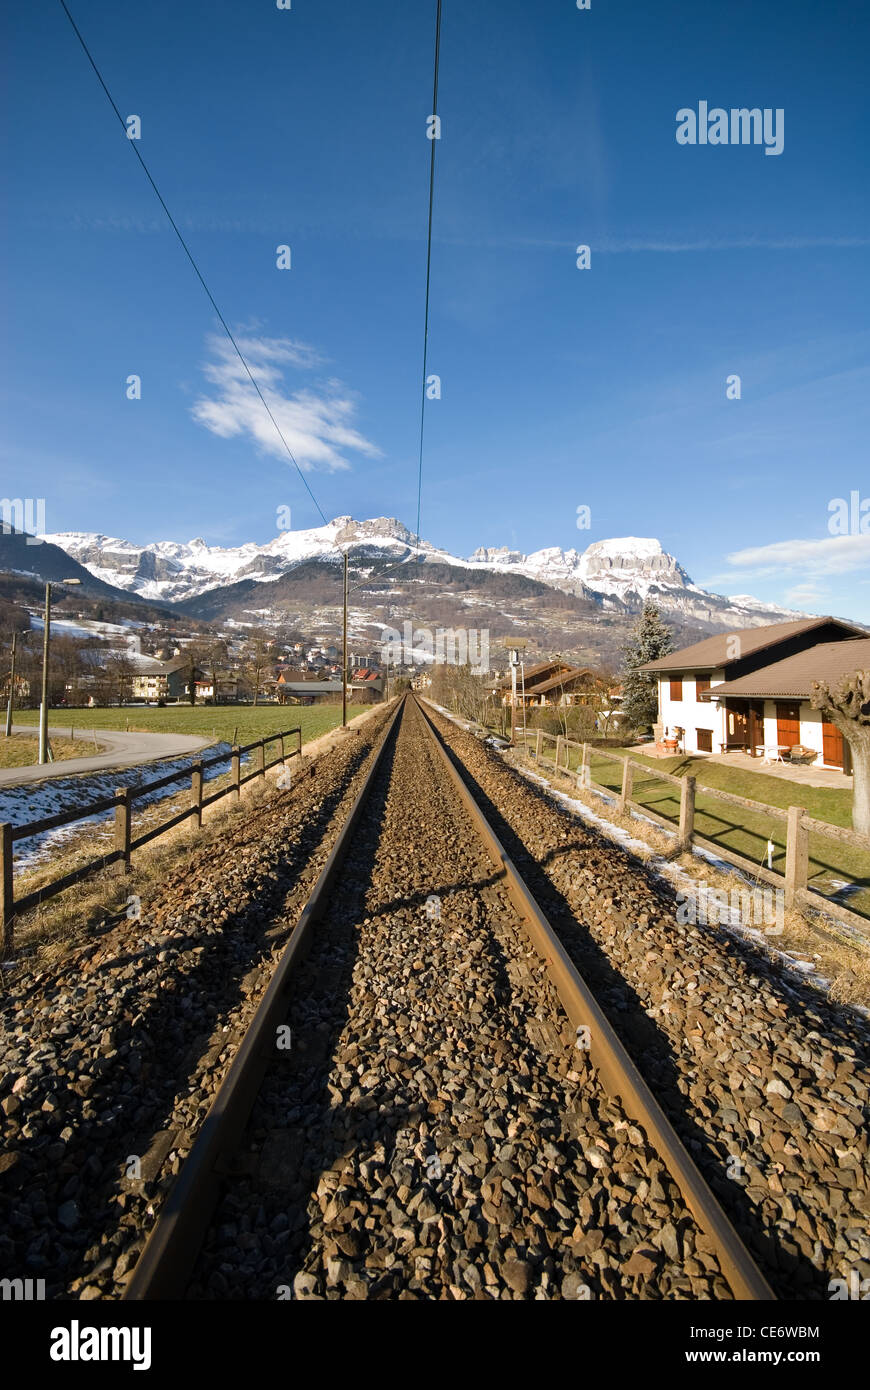 Une ville des Alpes entre Genève, Suisse, Chamonix, France Banque D'Images